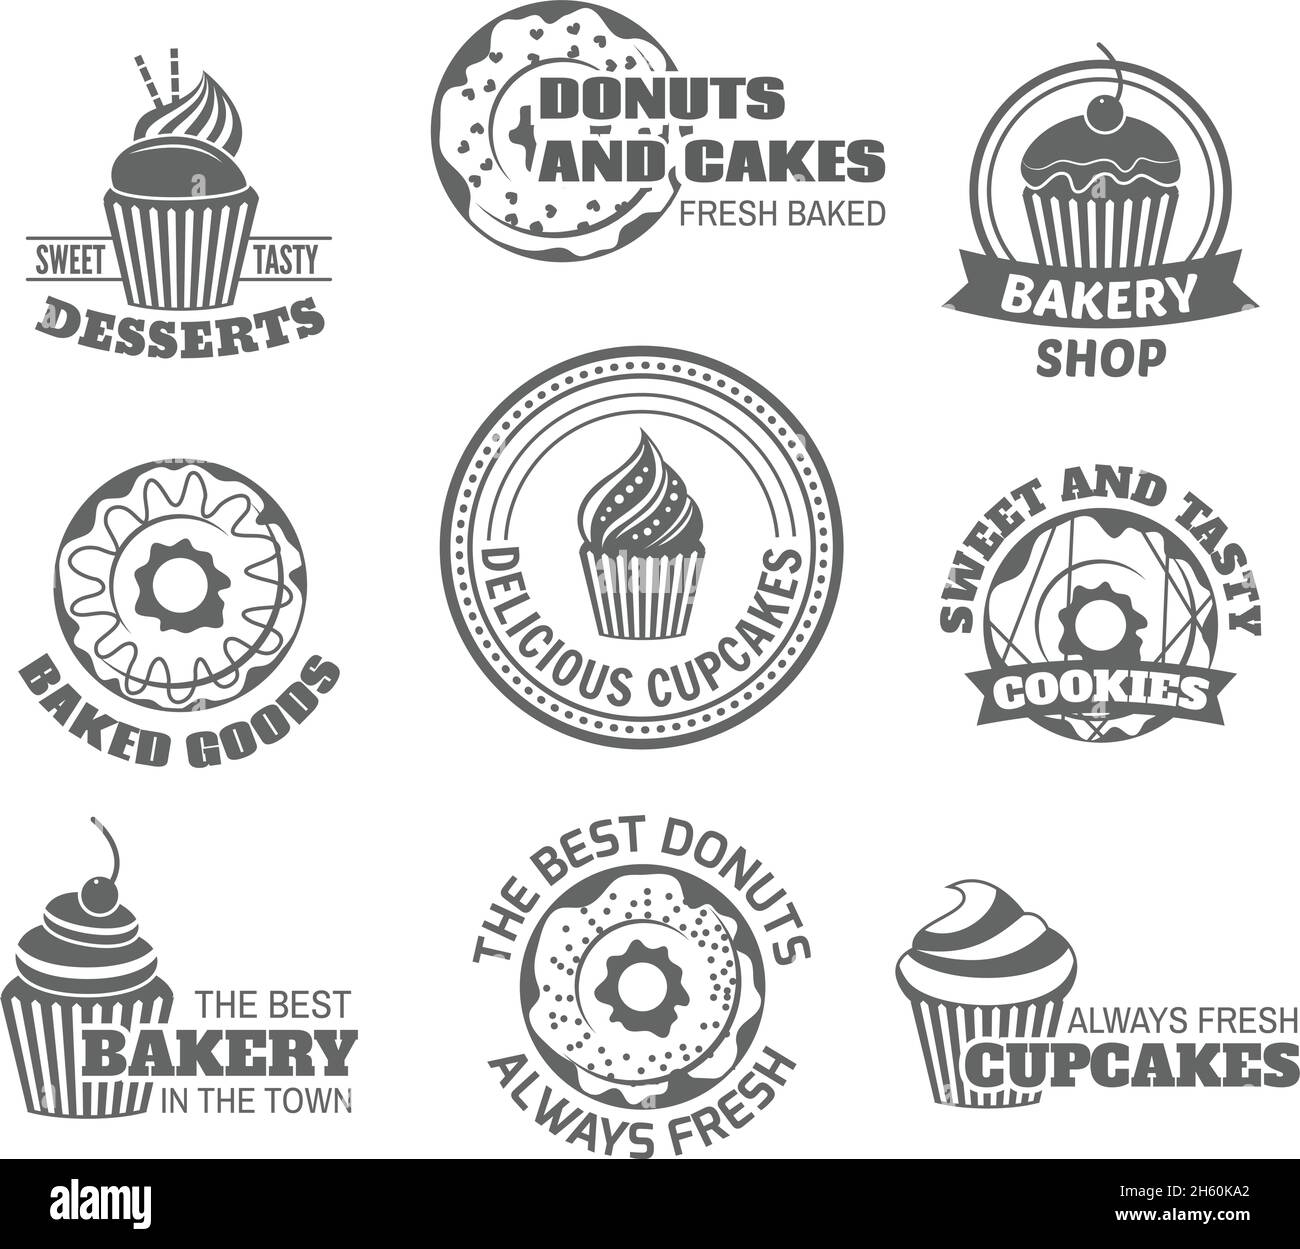 Essen süß lecker Desserts Donut und Cupcake Etiketten isoliert gesetzt vektorgrafik Stock Vektor